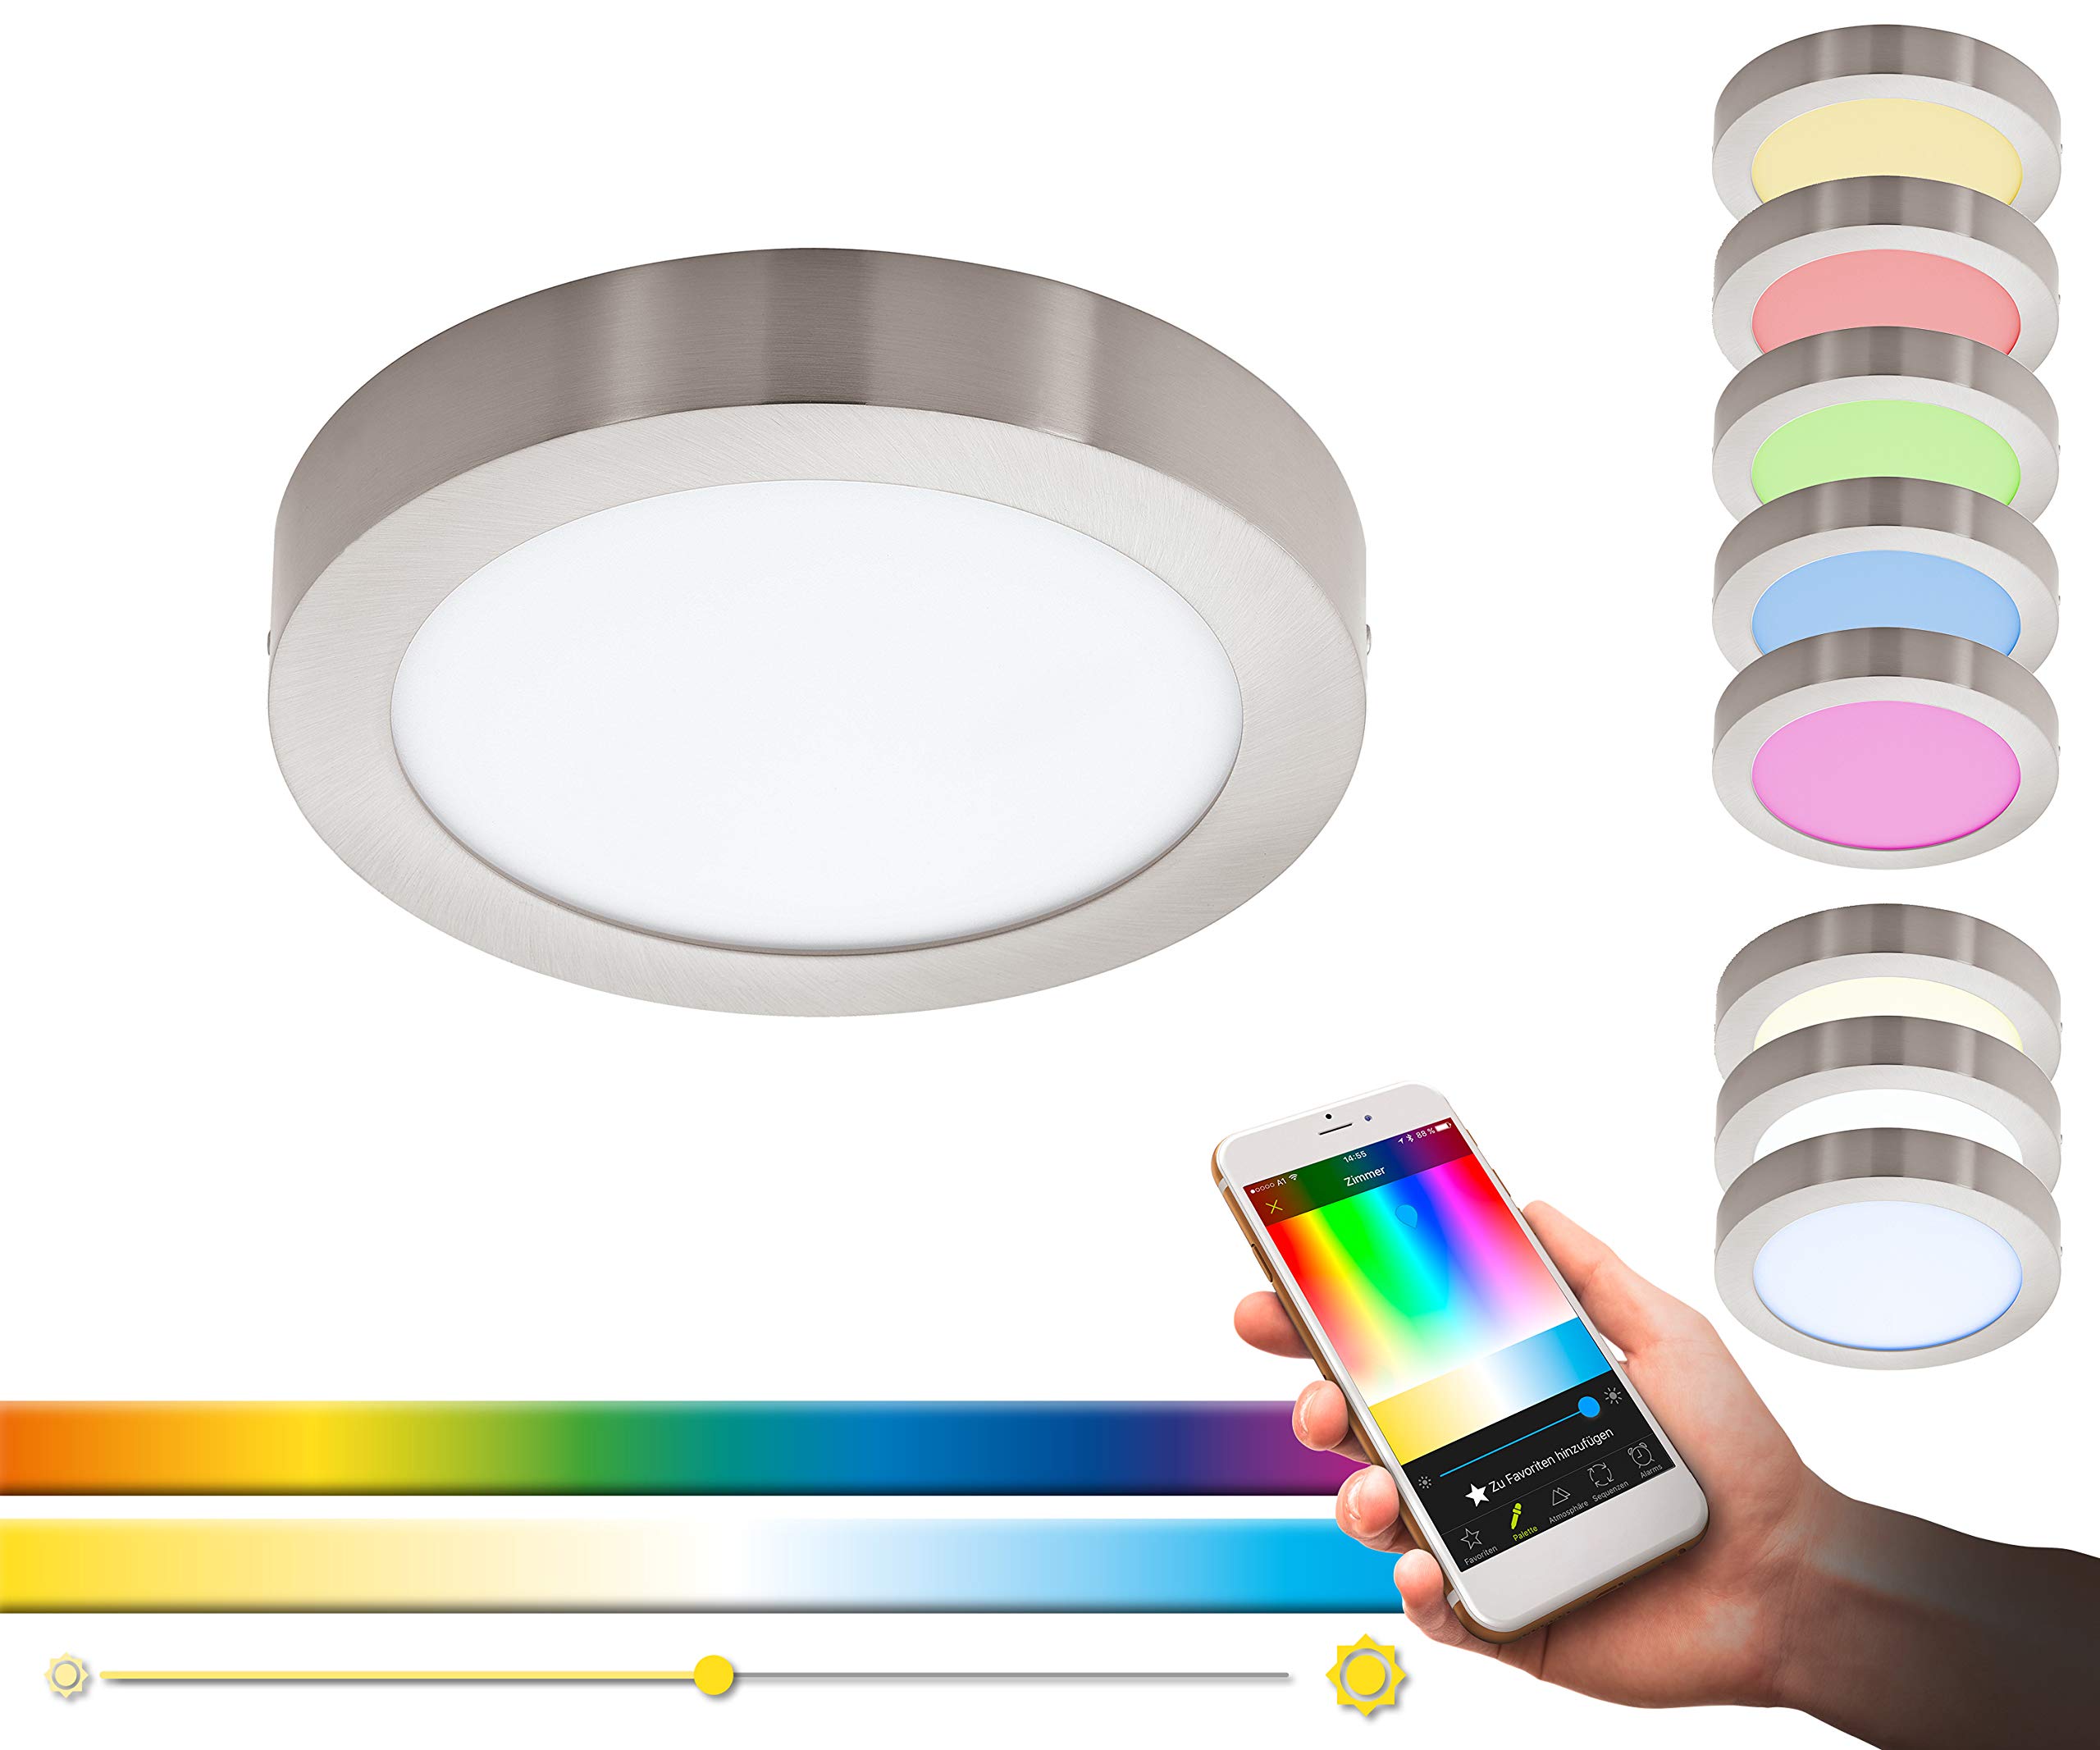 EGLO connect LED Deckenleuchte Fueva-C, Smart Home Deckenlampe, Material: Metallguss, Kunststoff, Farbe: Nickel matt, Ø: 22,5 cm, dimmbar, Weißtöne und Farben einstellbar